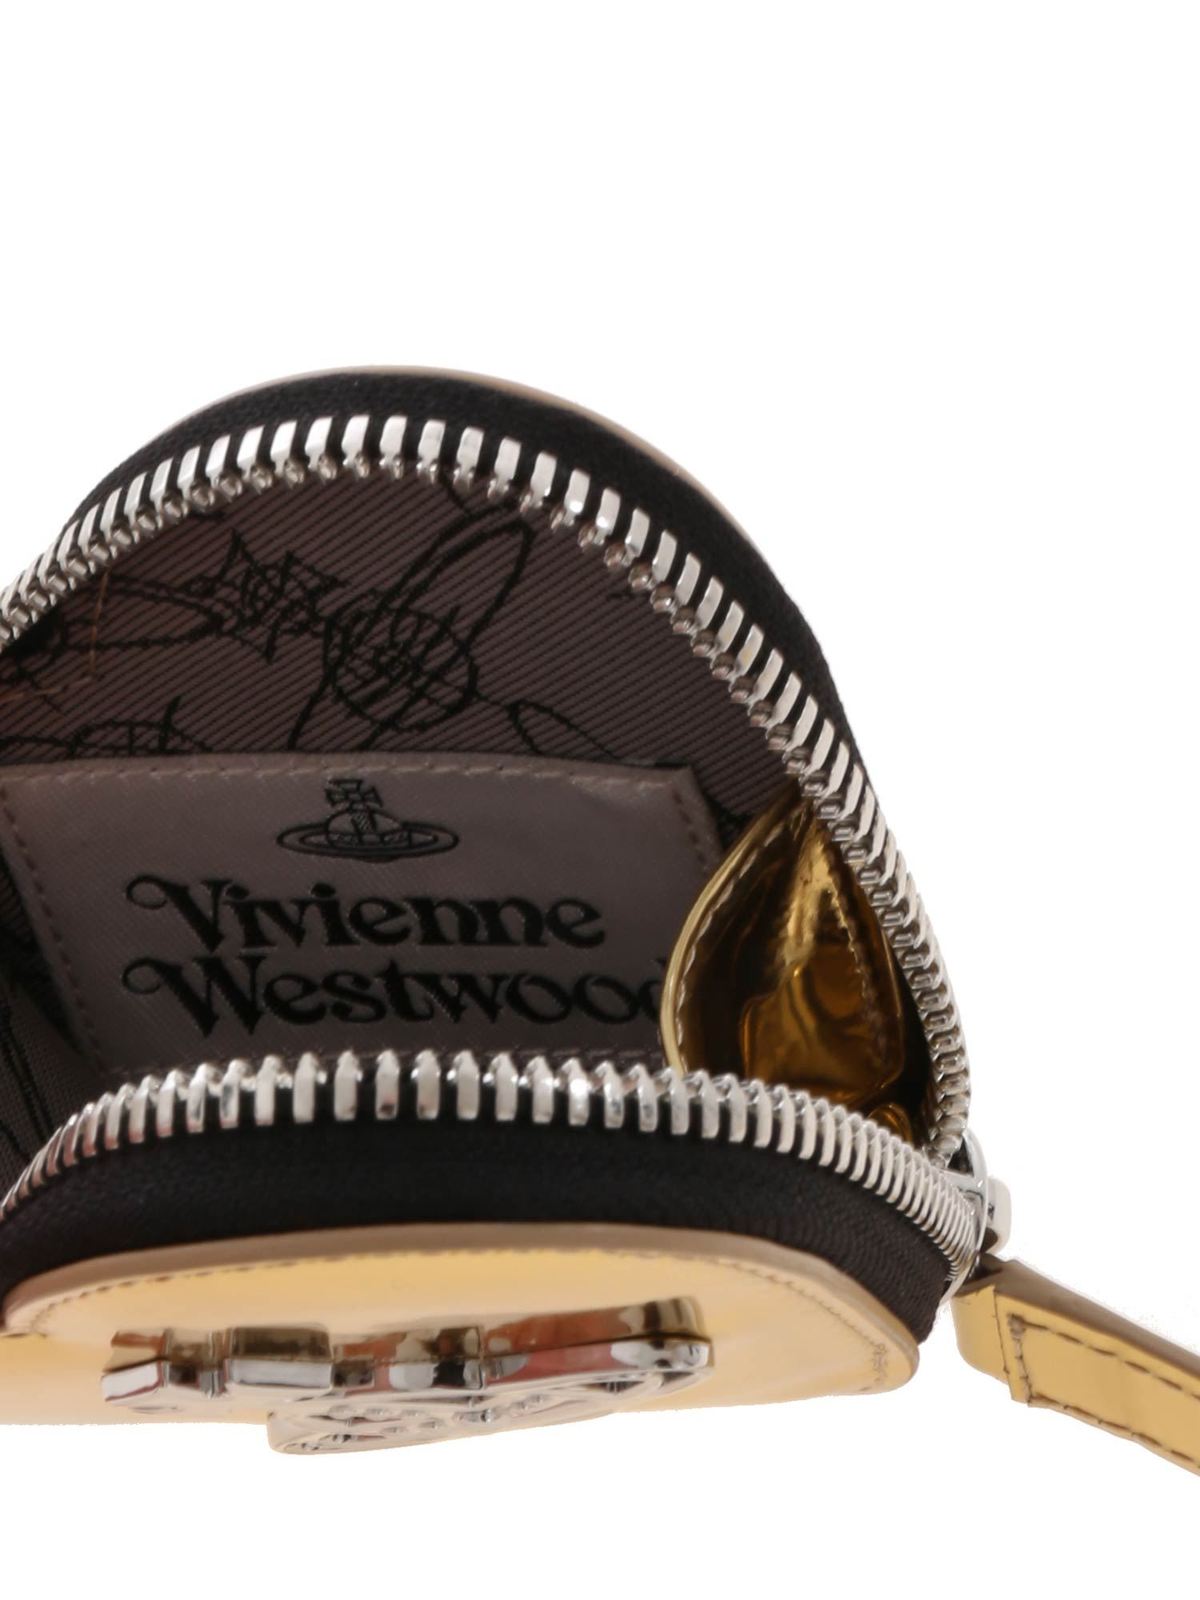 Vivienne Westwood Wallet Women 221005002 | eBay